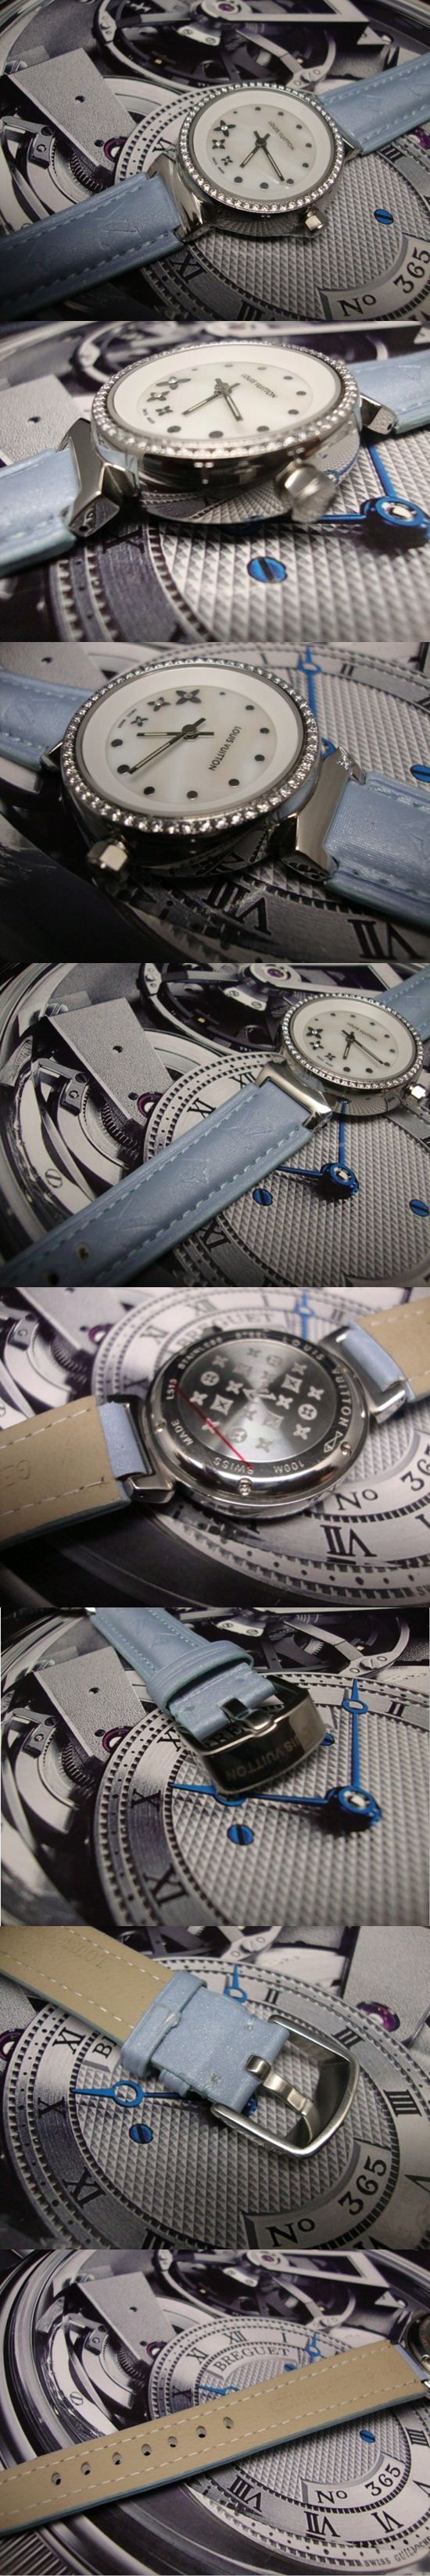 おしゃれなブランド時計がLOUIS-VUITTON-ルイヴィトン腕時計 ルイヴィトン 男/女性用腕時計 LOUIS-VUITTON-N-009Aを提供します.